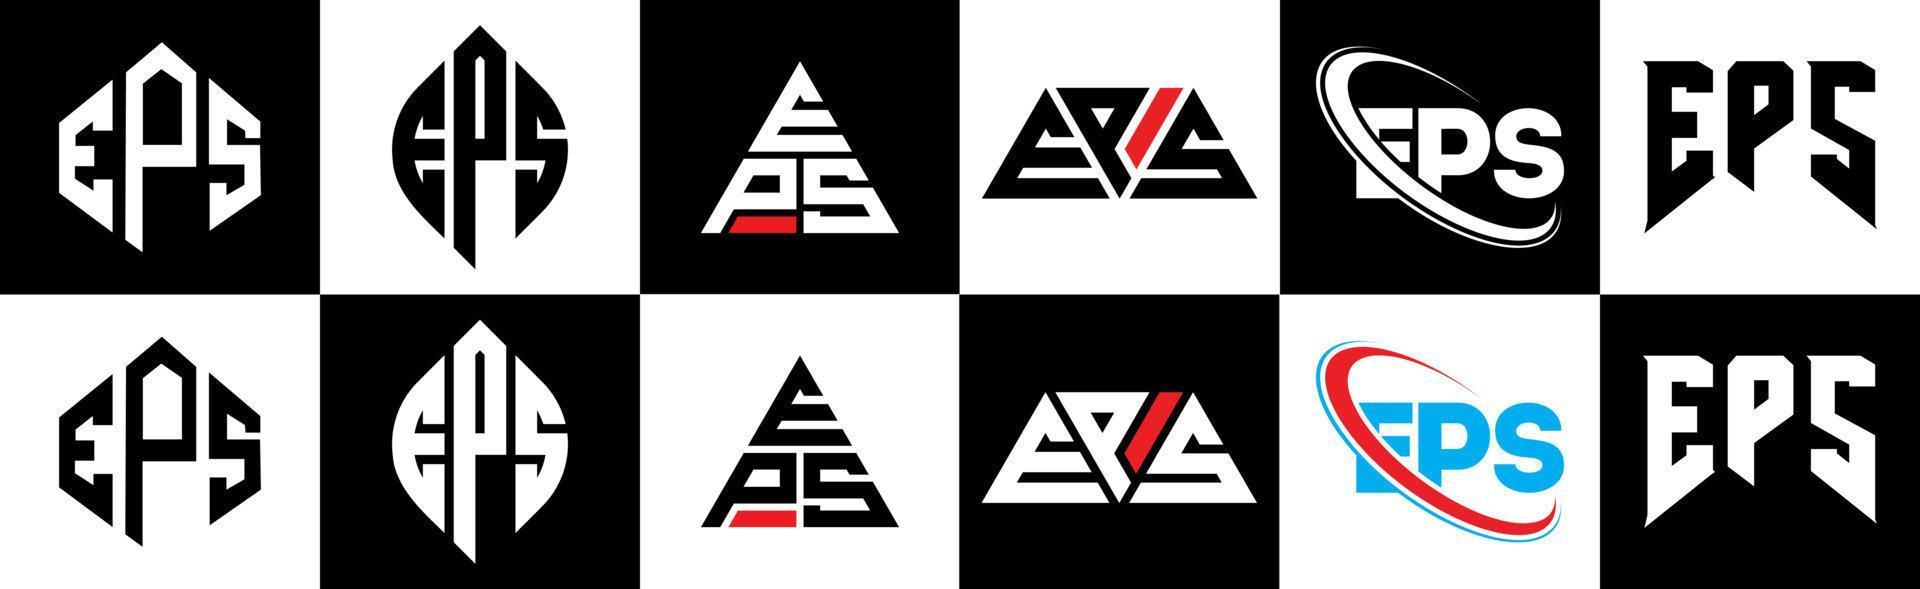 eps-Buchstaben-Logo-Design in sechs Stilen. eps polygon, kreis, dreieck, sechseck, flacher und einfacher stil mit schwarz-weißem buchstabenlogo in einer zeichenfläche. eps minimalistisches und klassisches logo vektor